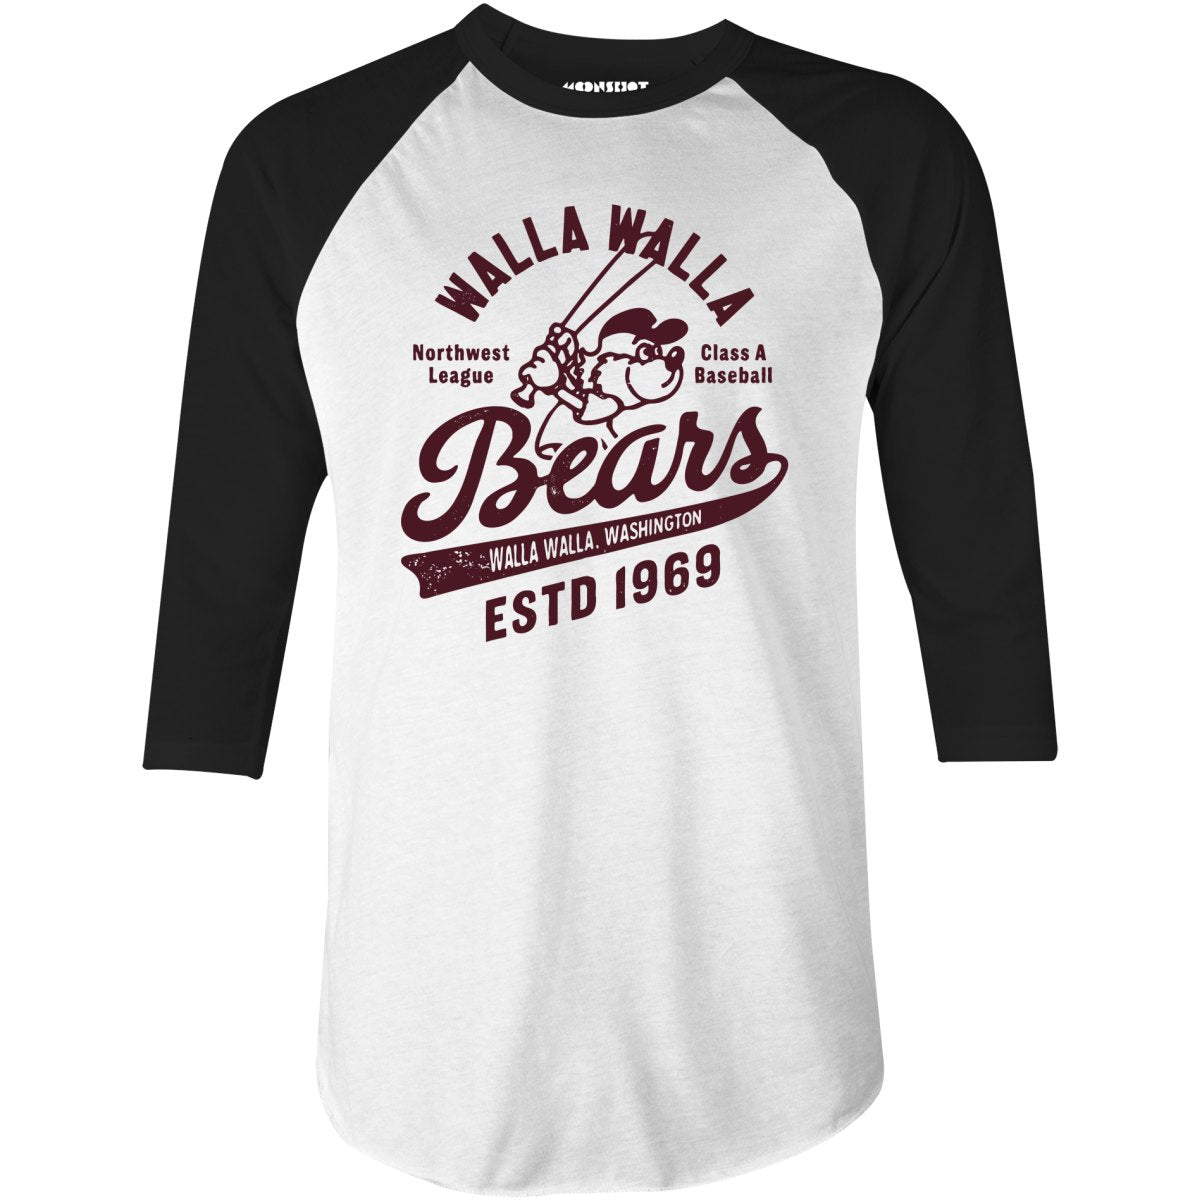 Walla Walla Bears - Washington - Vintage Defunct Baseball Teams - 3/4 Sleeve Raglan T-Shirt